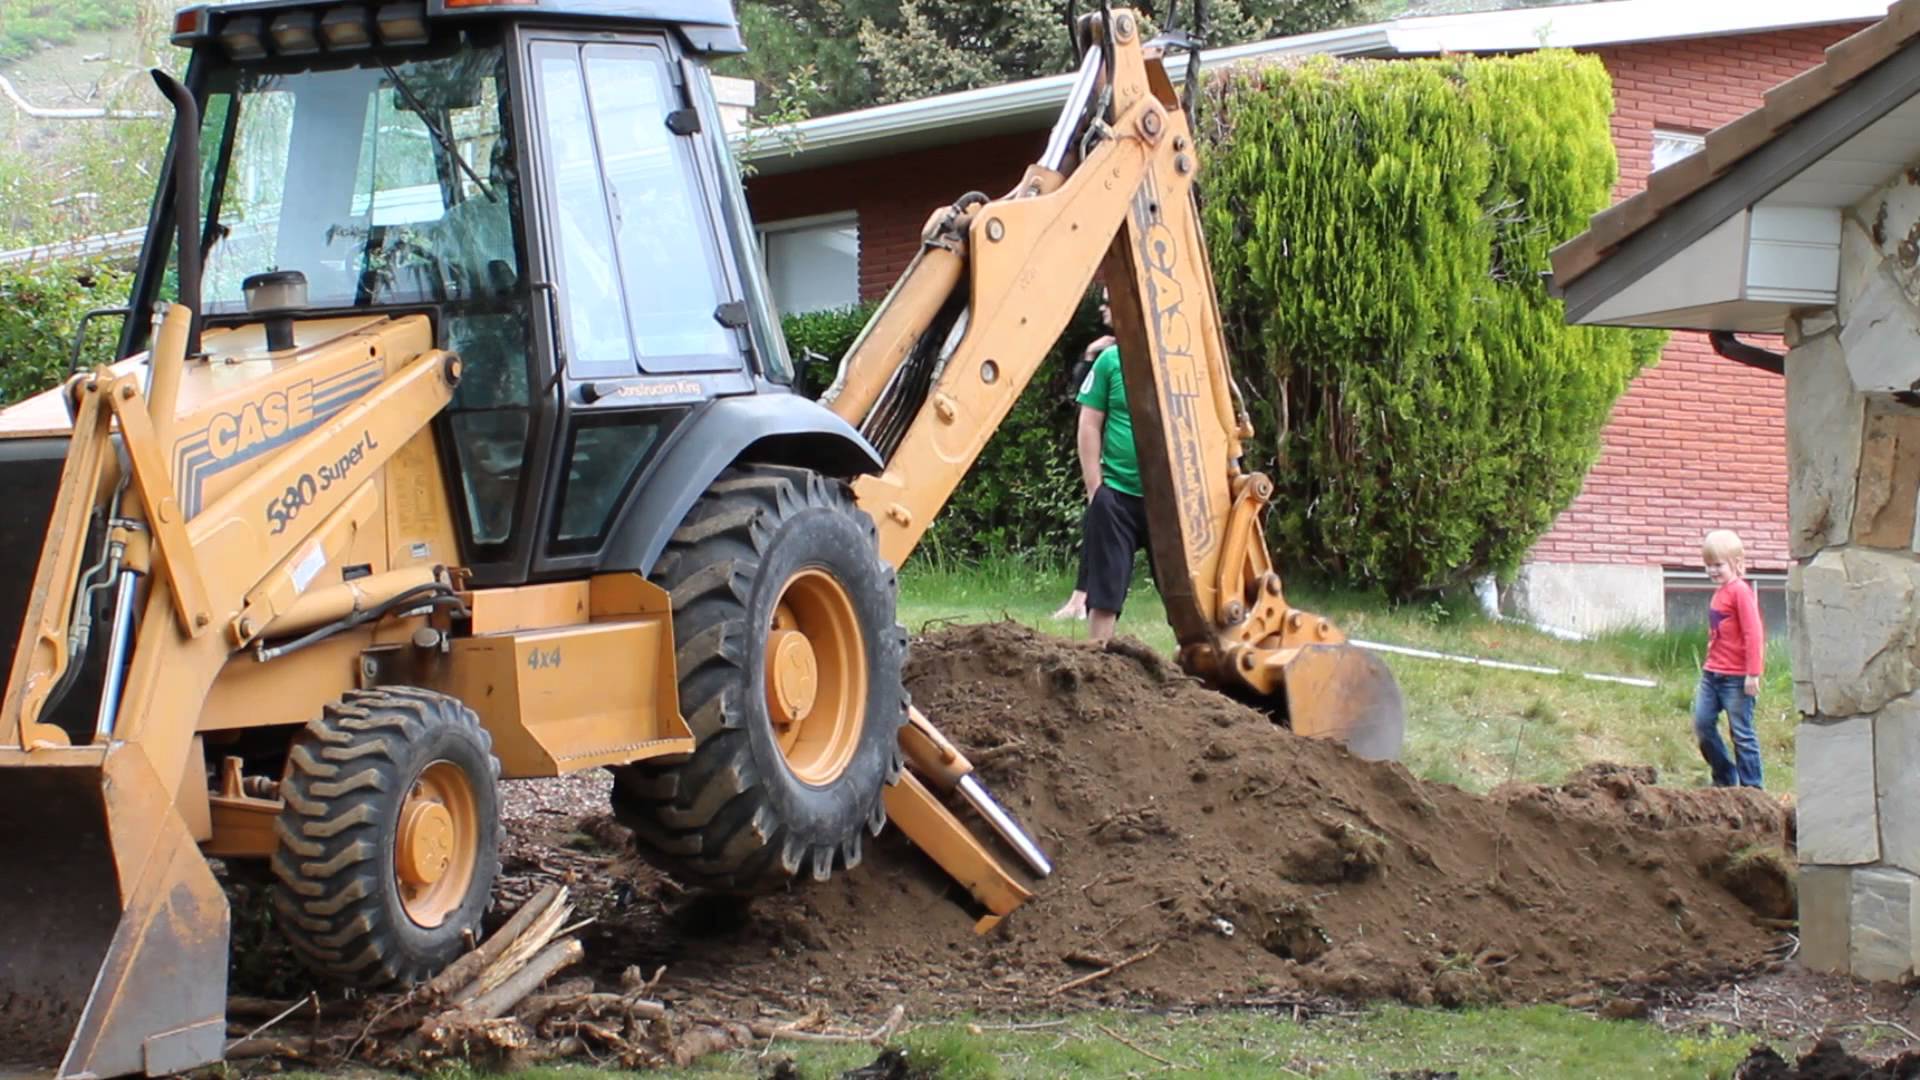 Case 580 L Backhoe Using Back arm for digging. - YouTube